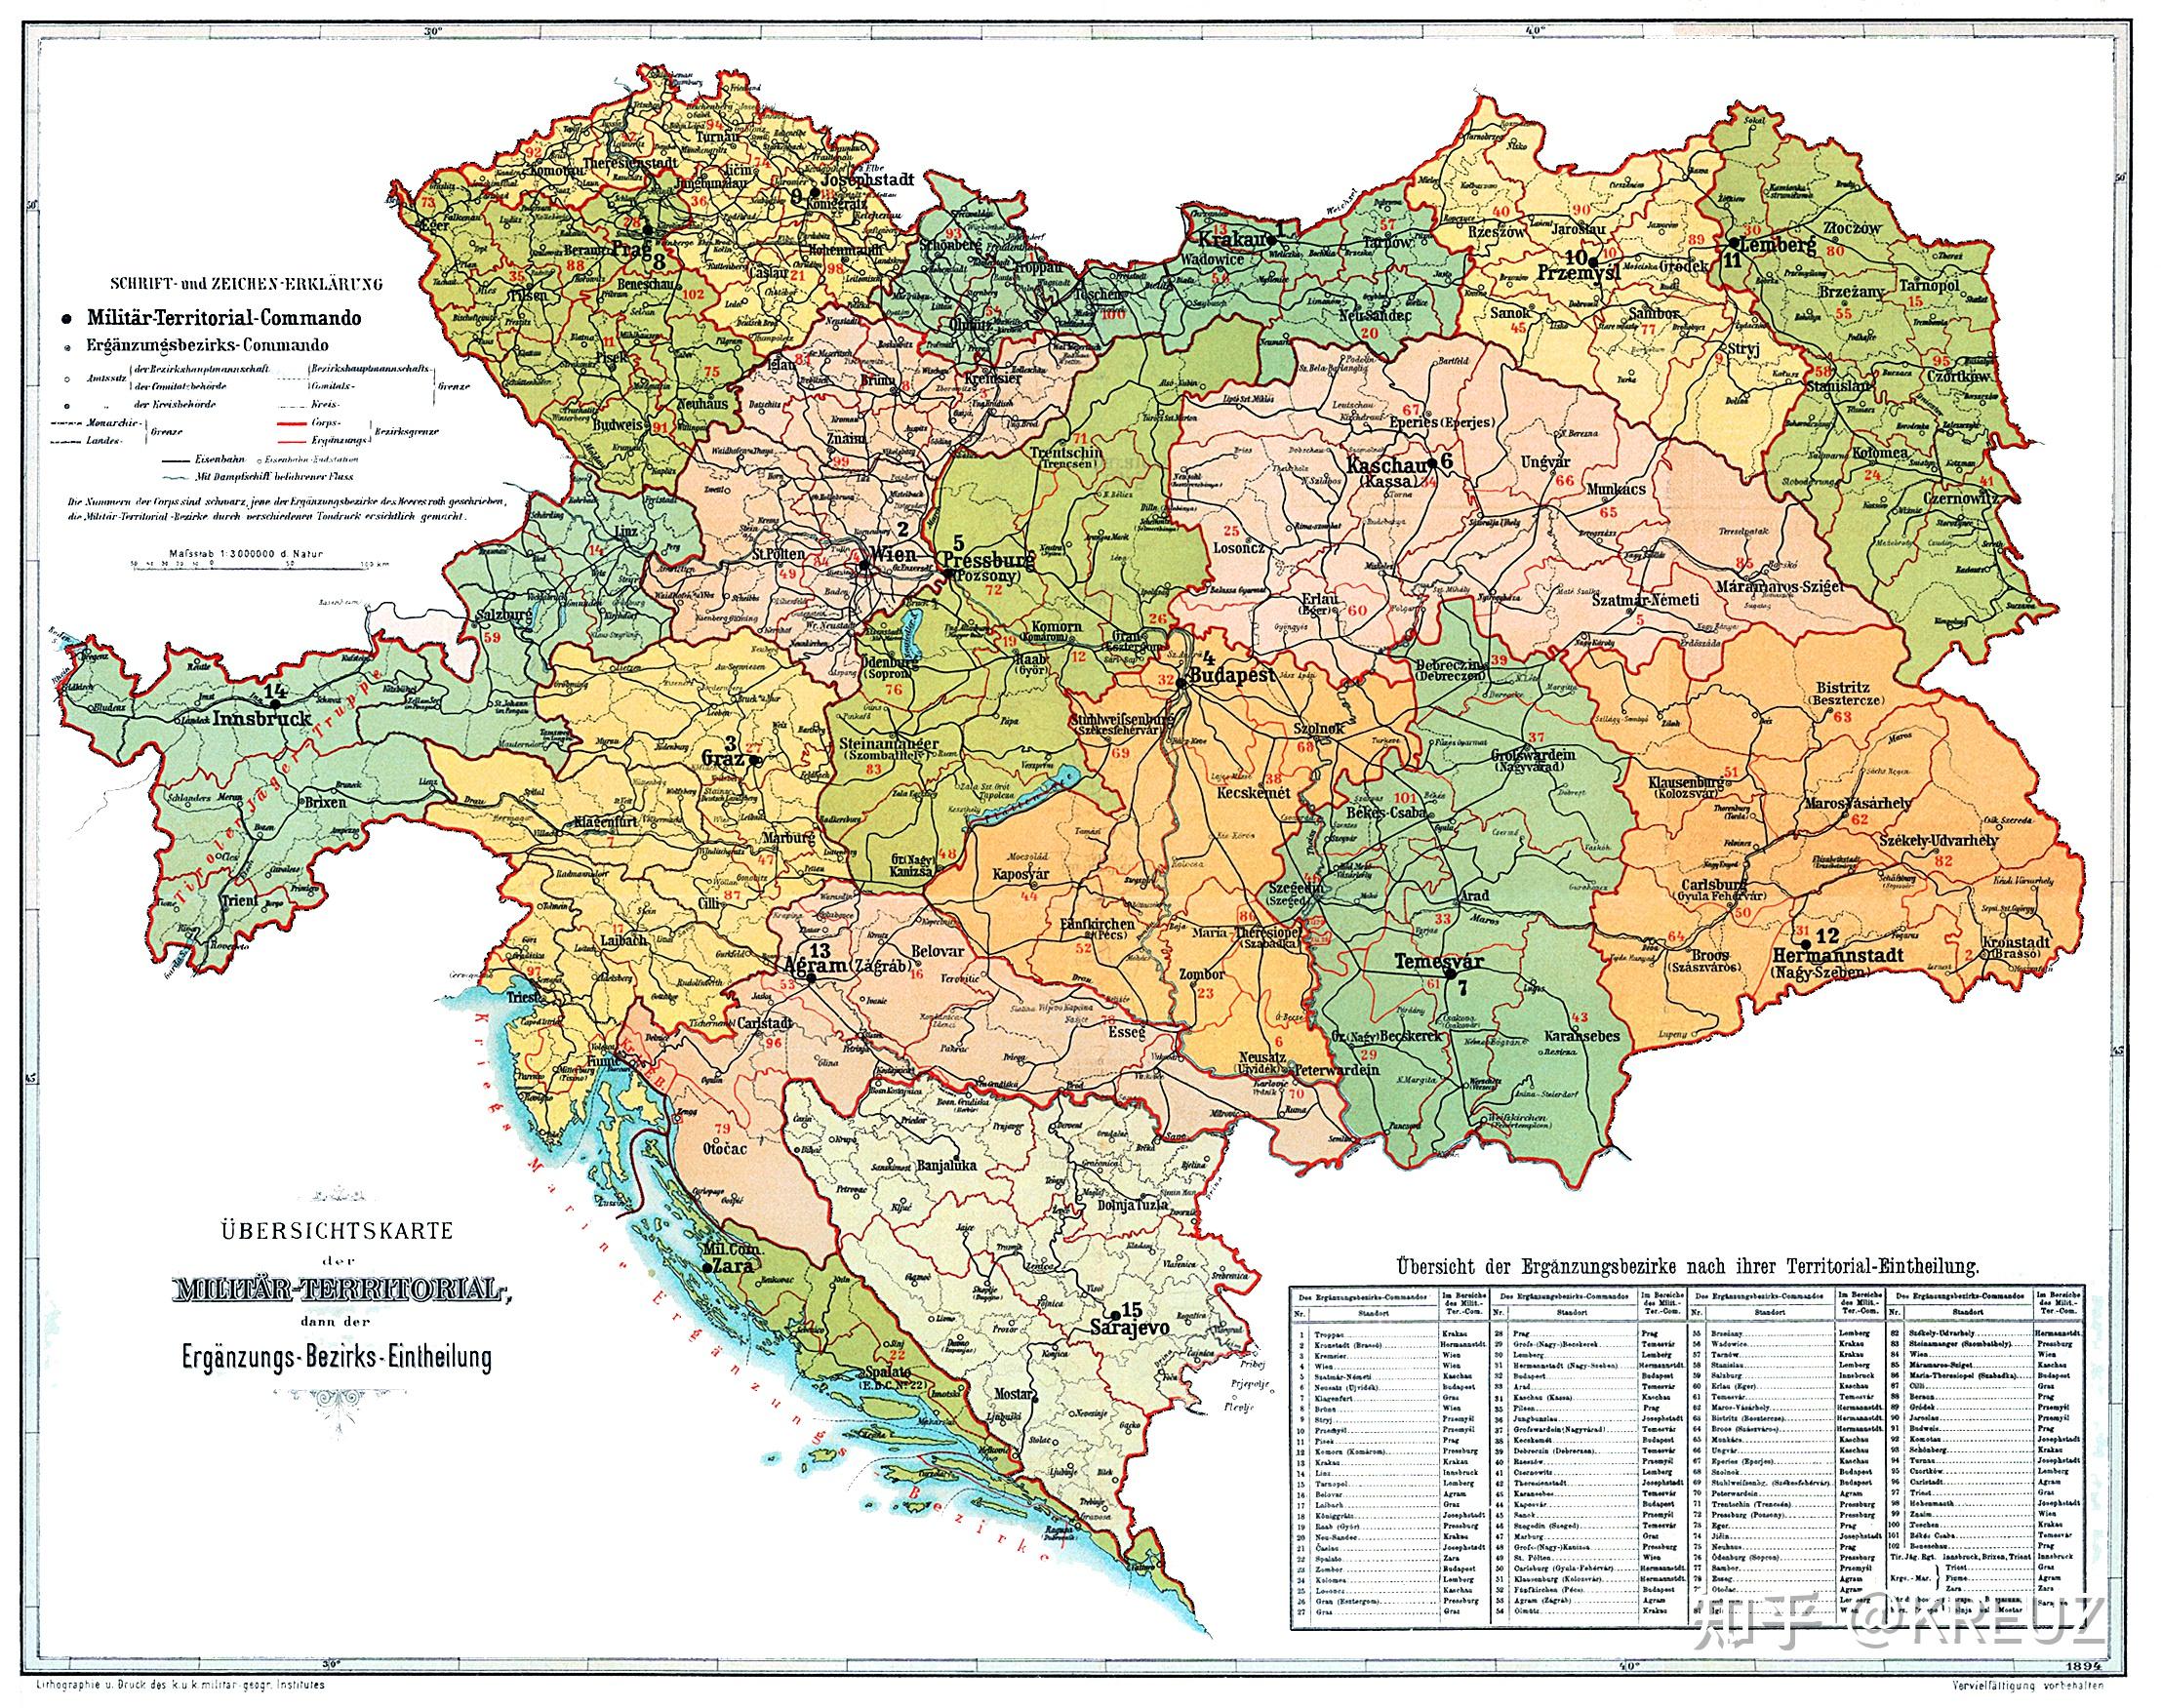 底图为1900德意志帝国,灰色区域为战后公投脱离的),而这32个军区又被